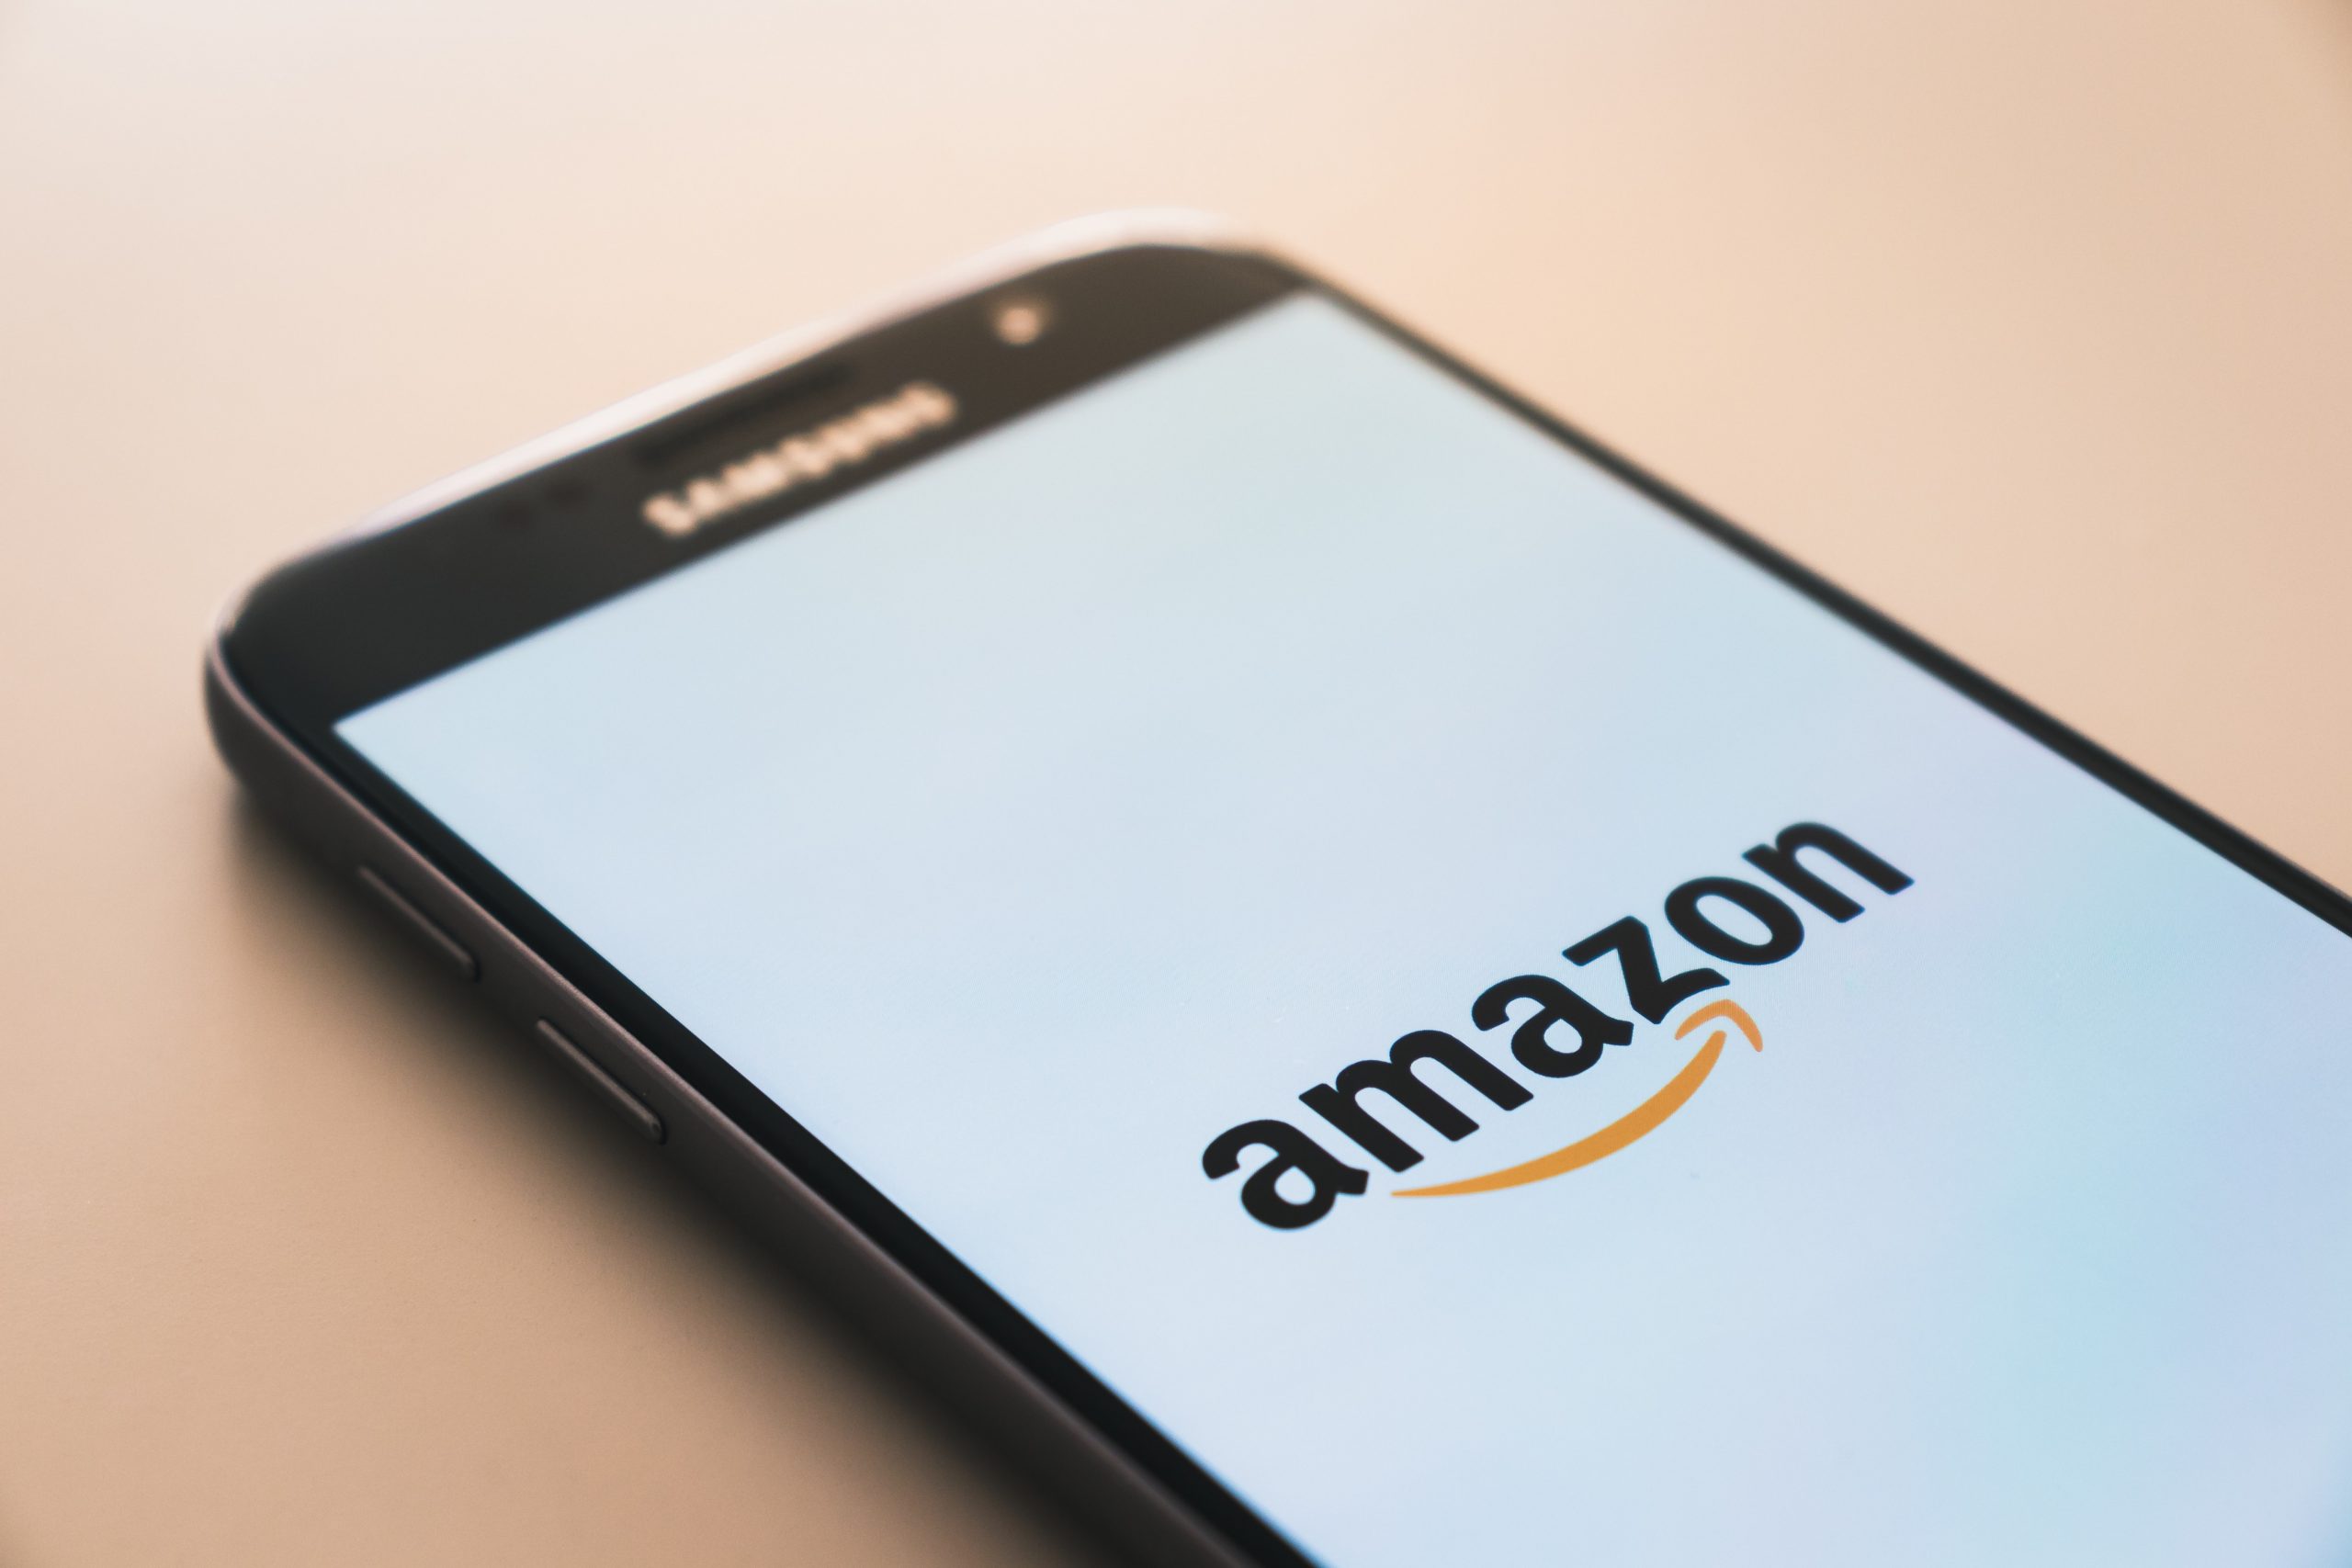 Oprichter Amazon verwacht recordverkopen Amazon door coronacrisis